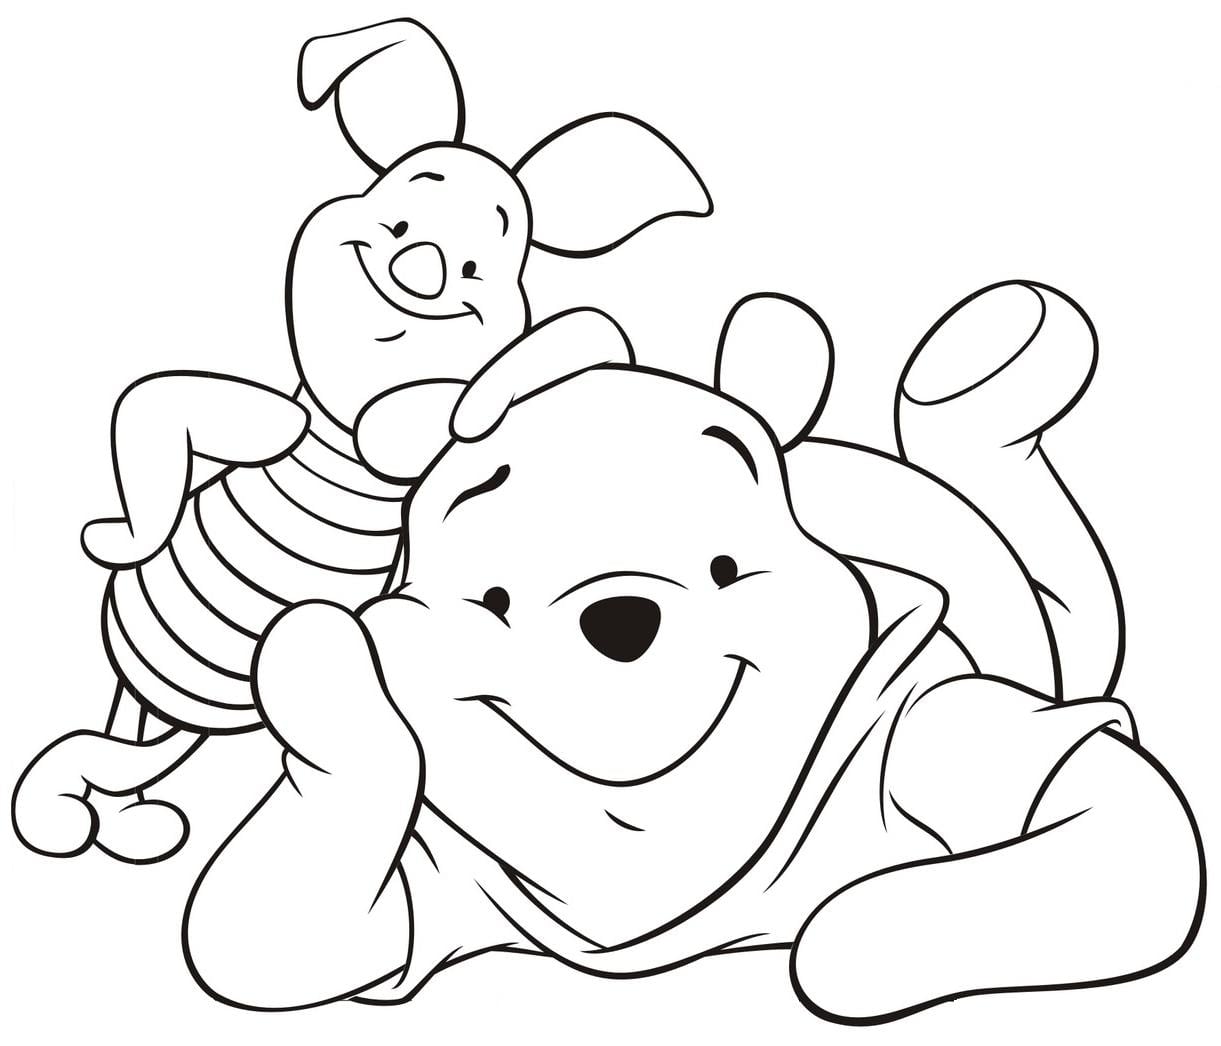 Desenhos Do Ursinho Pooh Para Colorir